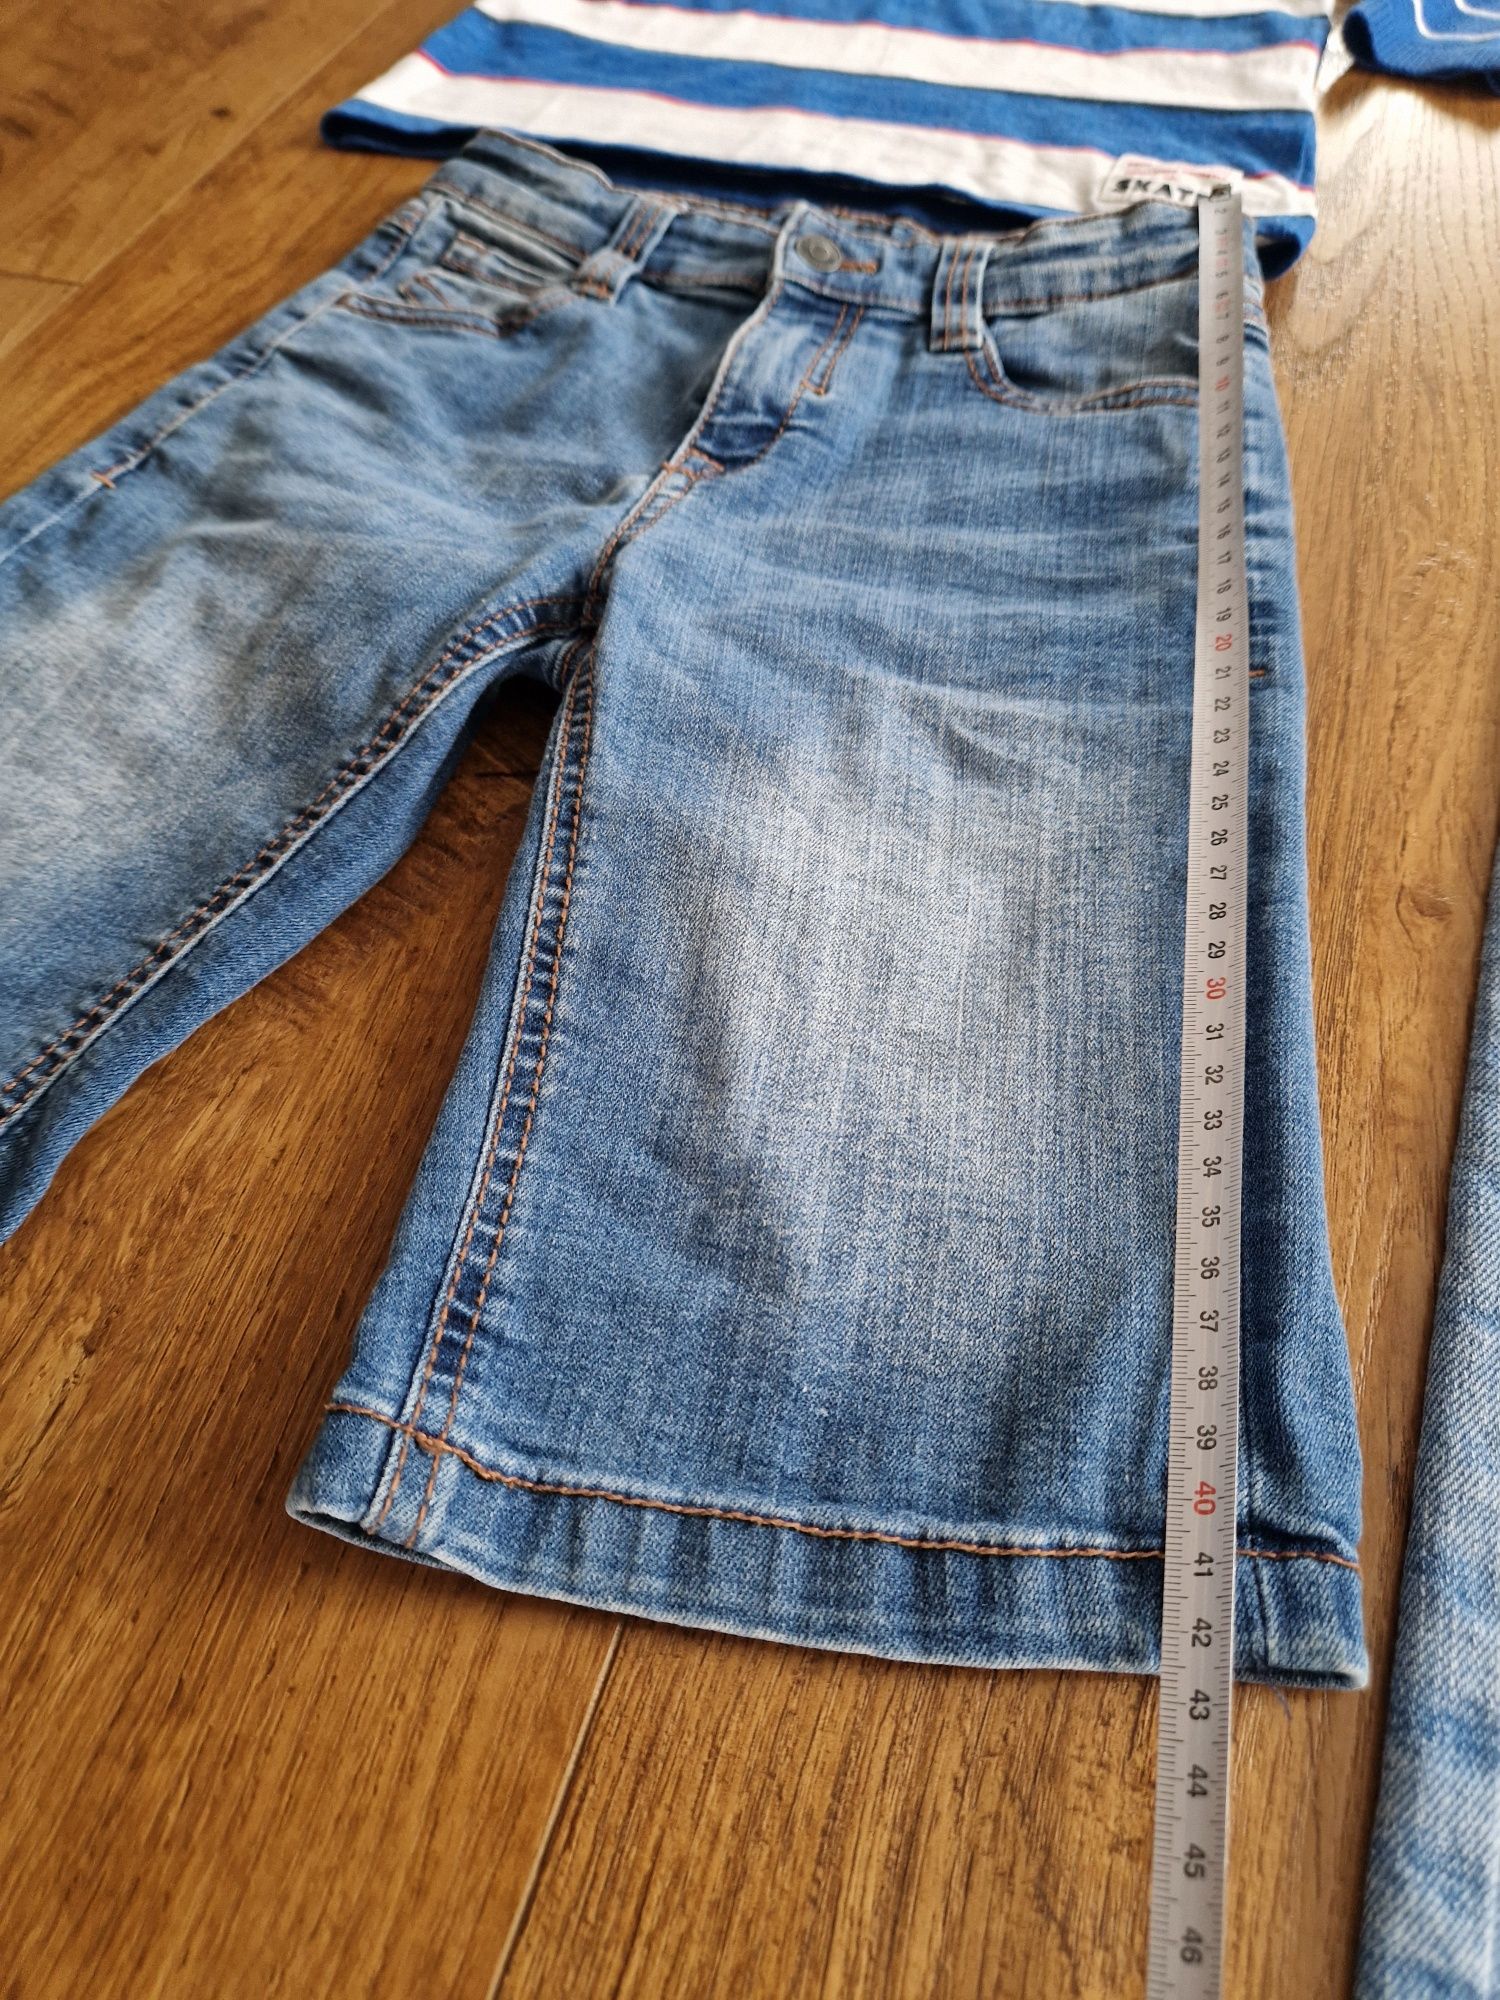 Пакет вещей одежды джинсы шорты джемпер футболка 122-128см